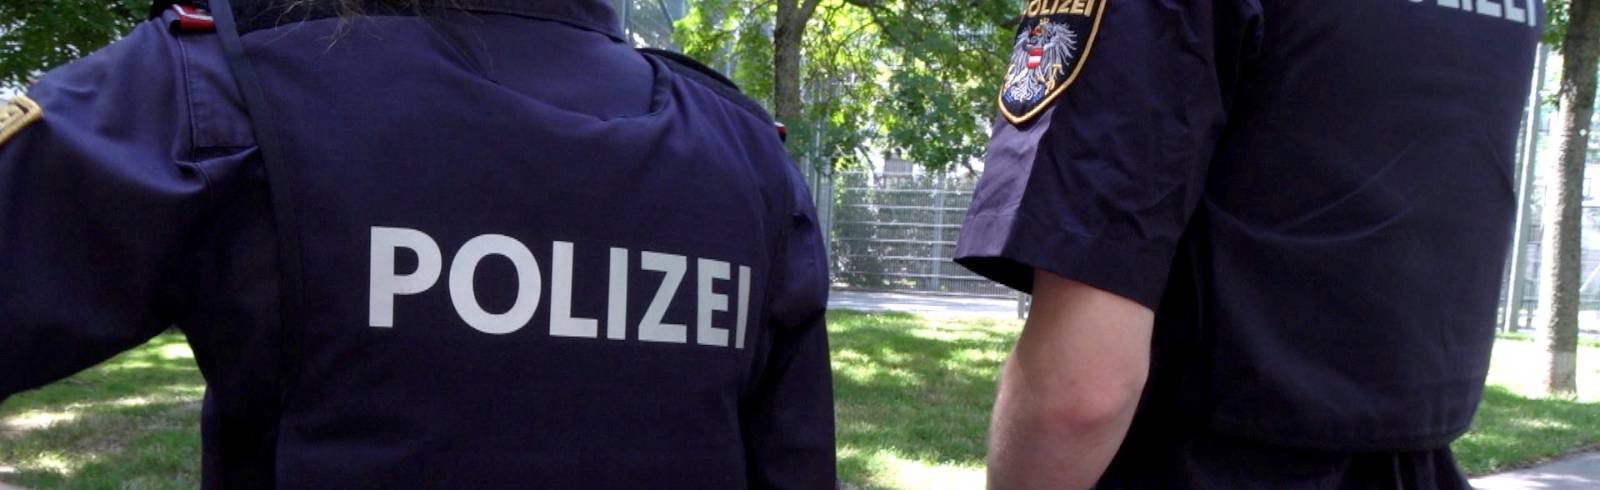 Stadtbarometer: Braucht's mehr Polizei?